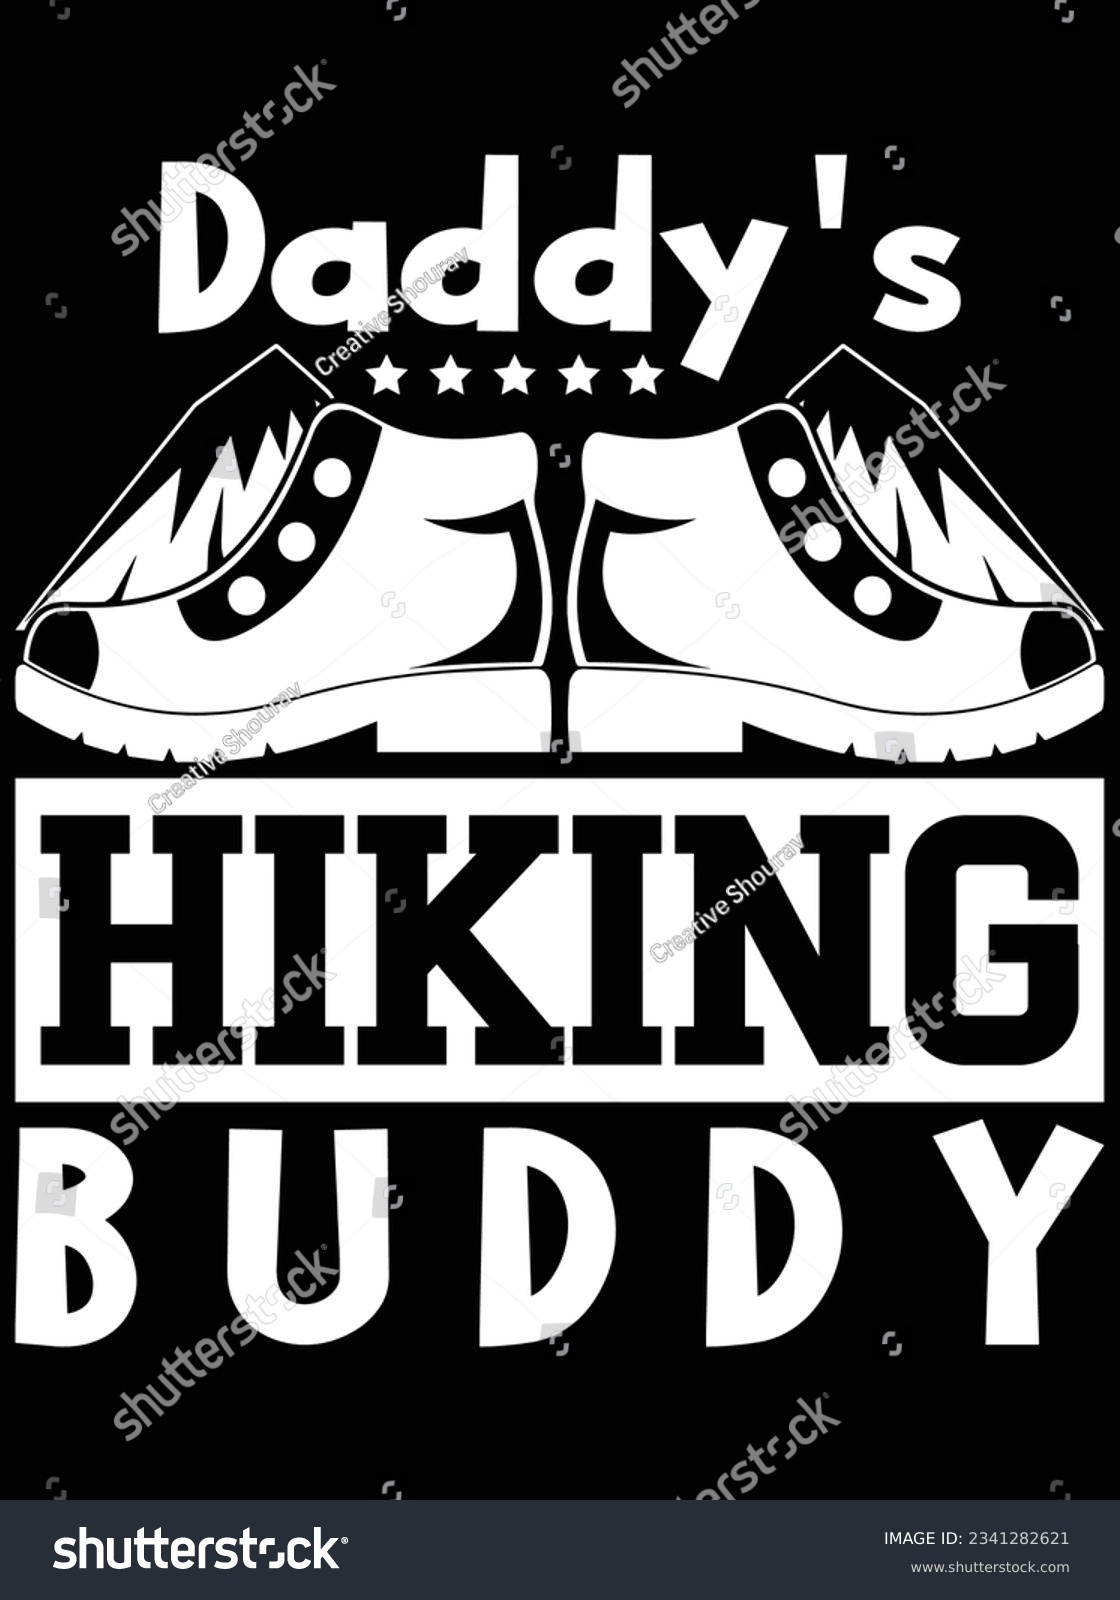 SVG of Daddy's hiking buddy vector art design, eps file. design file for t-shirt. SVG, EPS cuttable design file svg